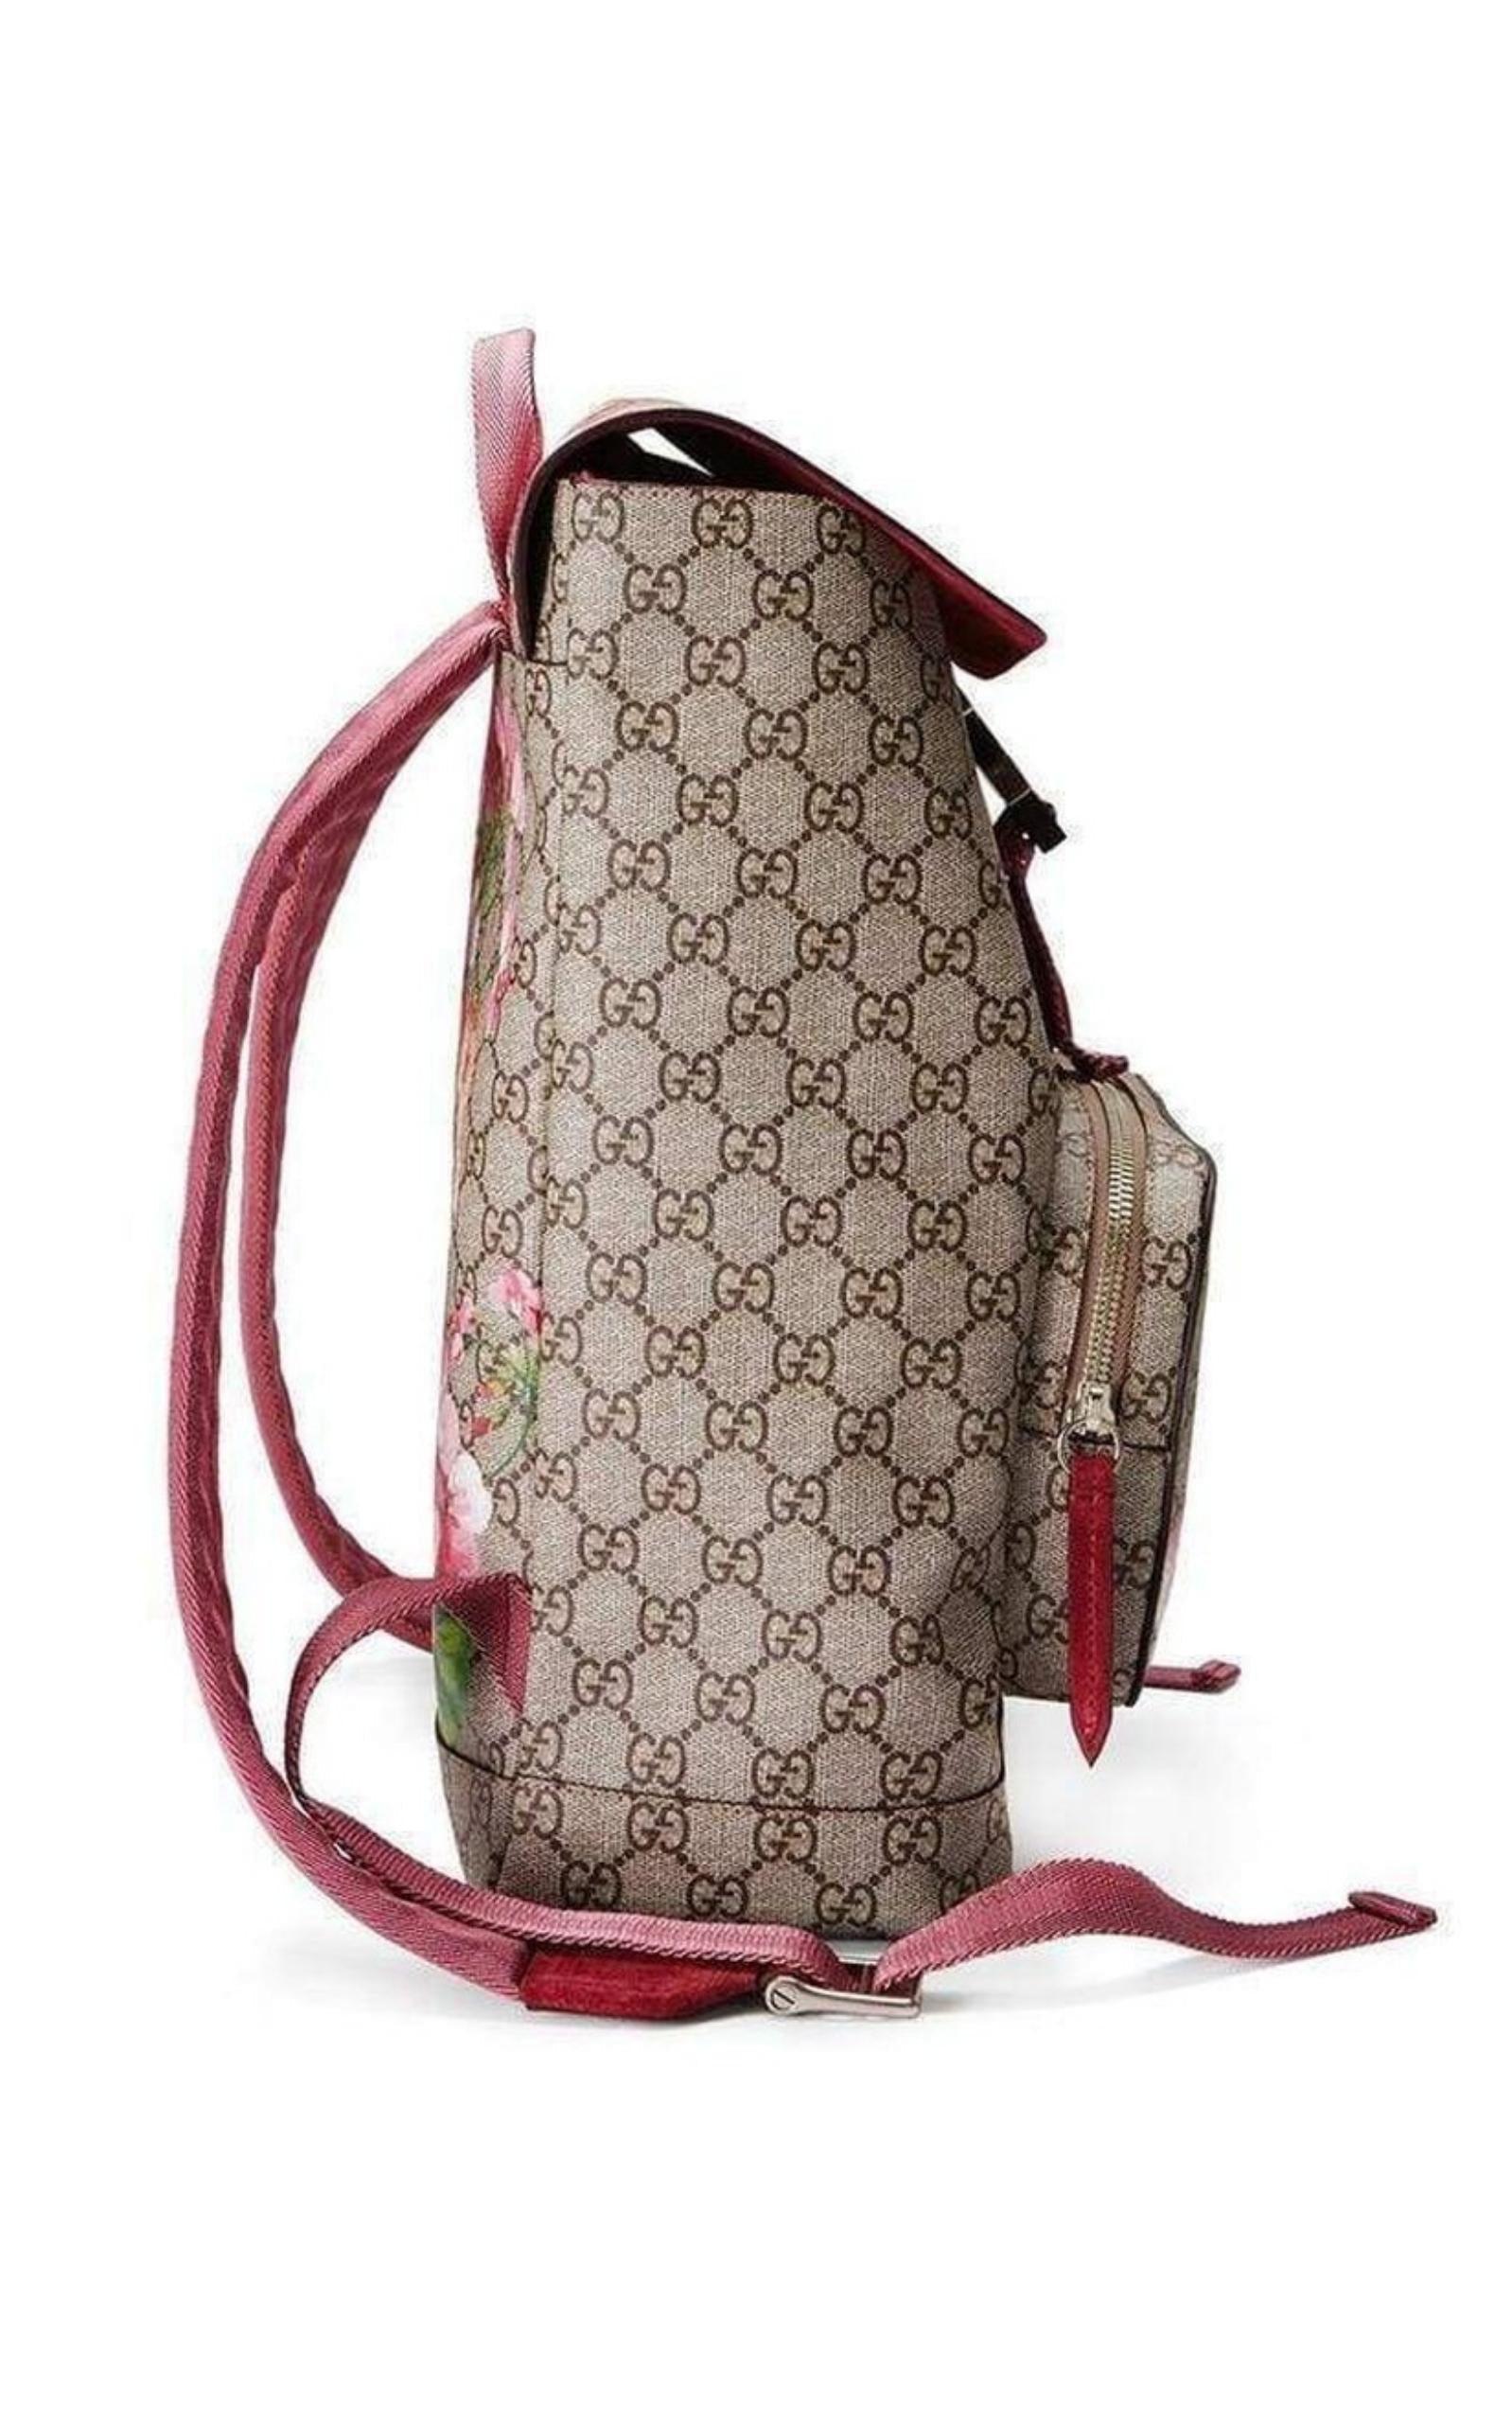 Gucci GG Black backpack  Patterned backpack, Bags, Supreme backpack